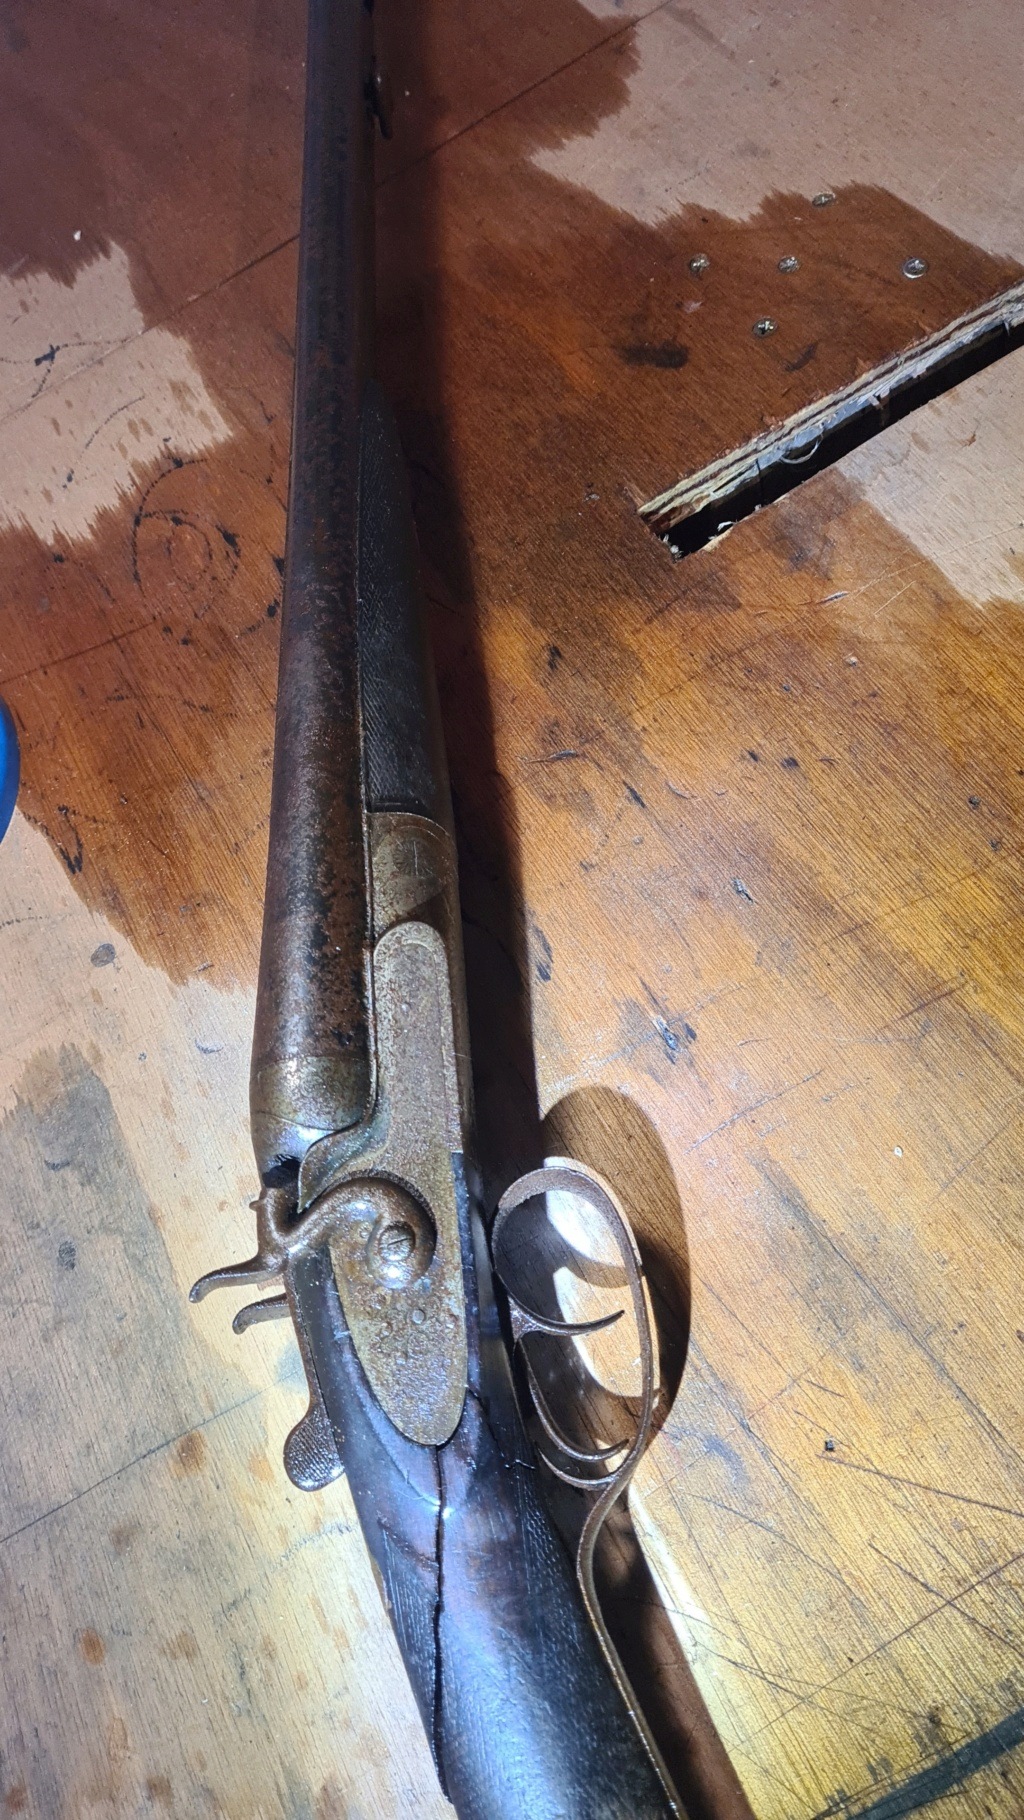 Fusil de chasse maufacture de Liège remise au propre Snapch75